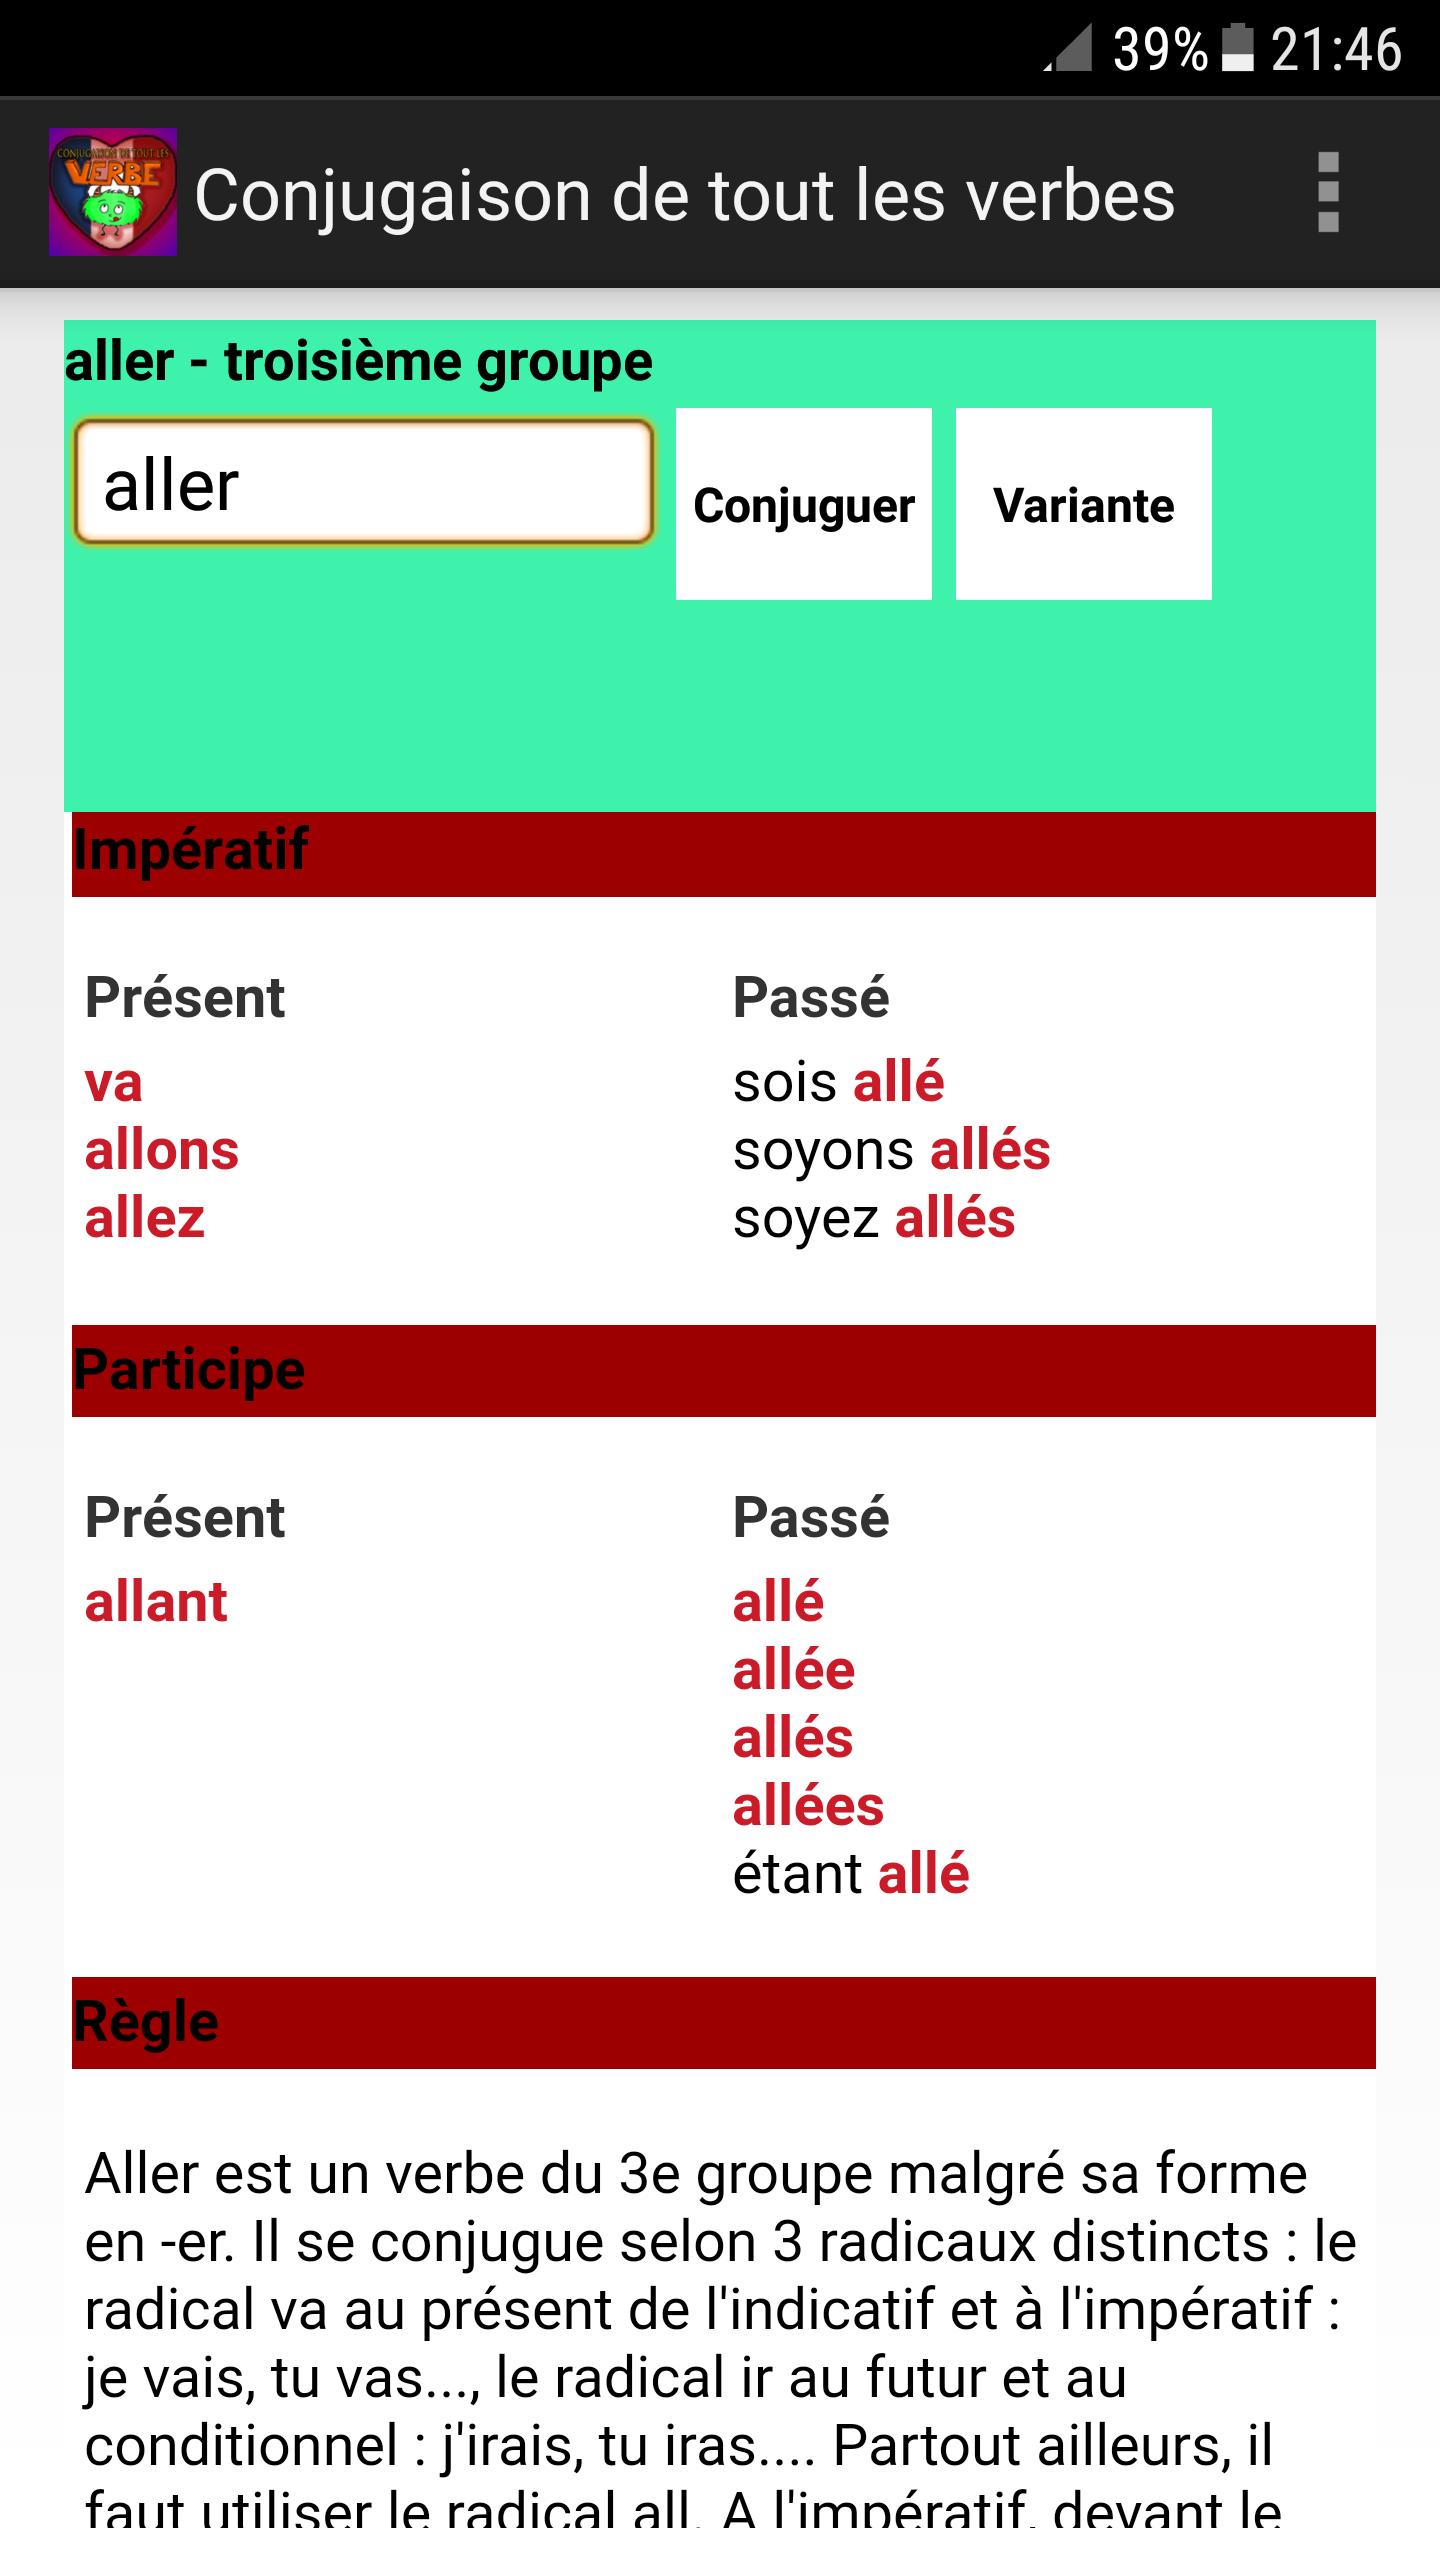 Conjugaison De Tout Les Verbes For Android Apk Download